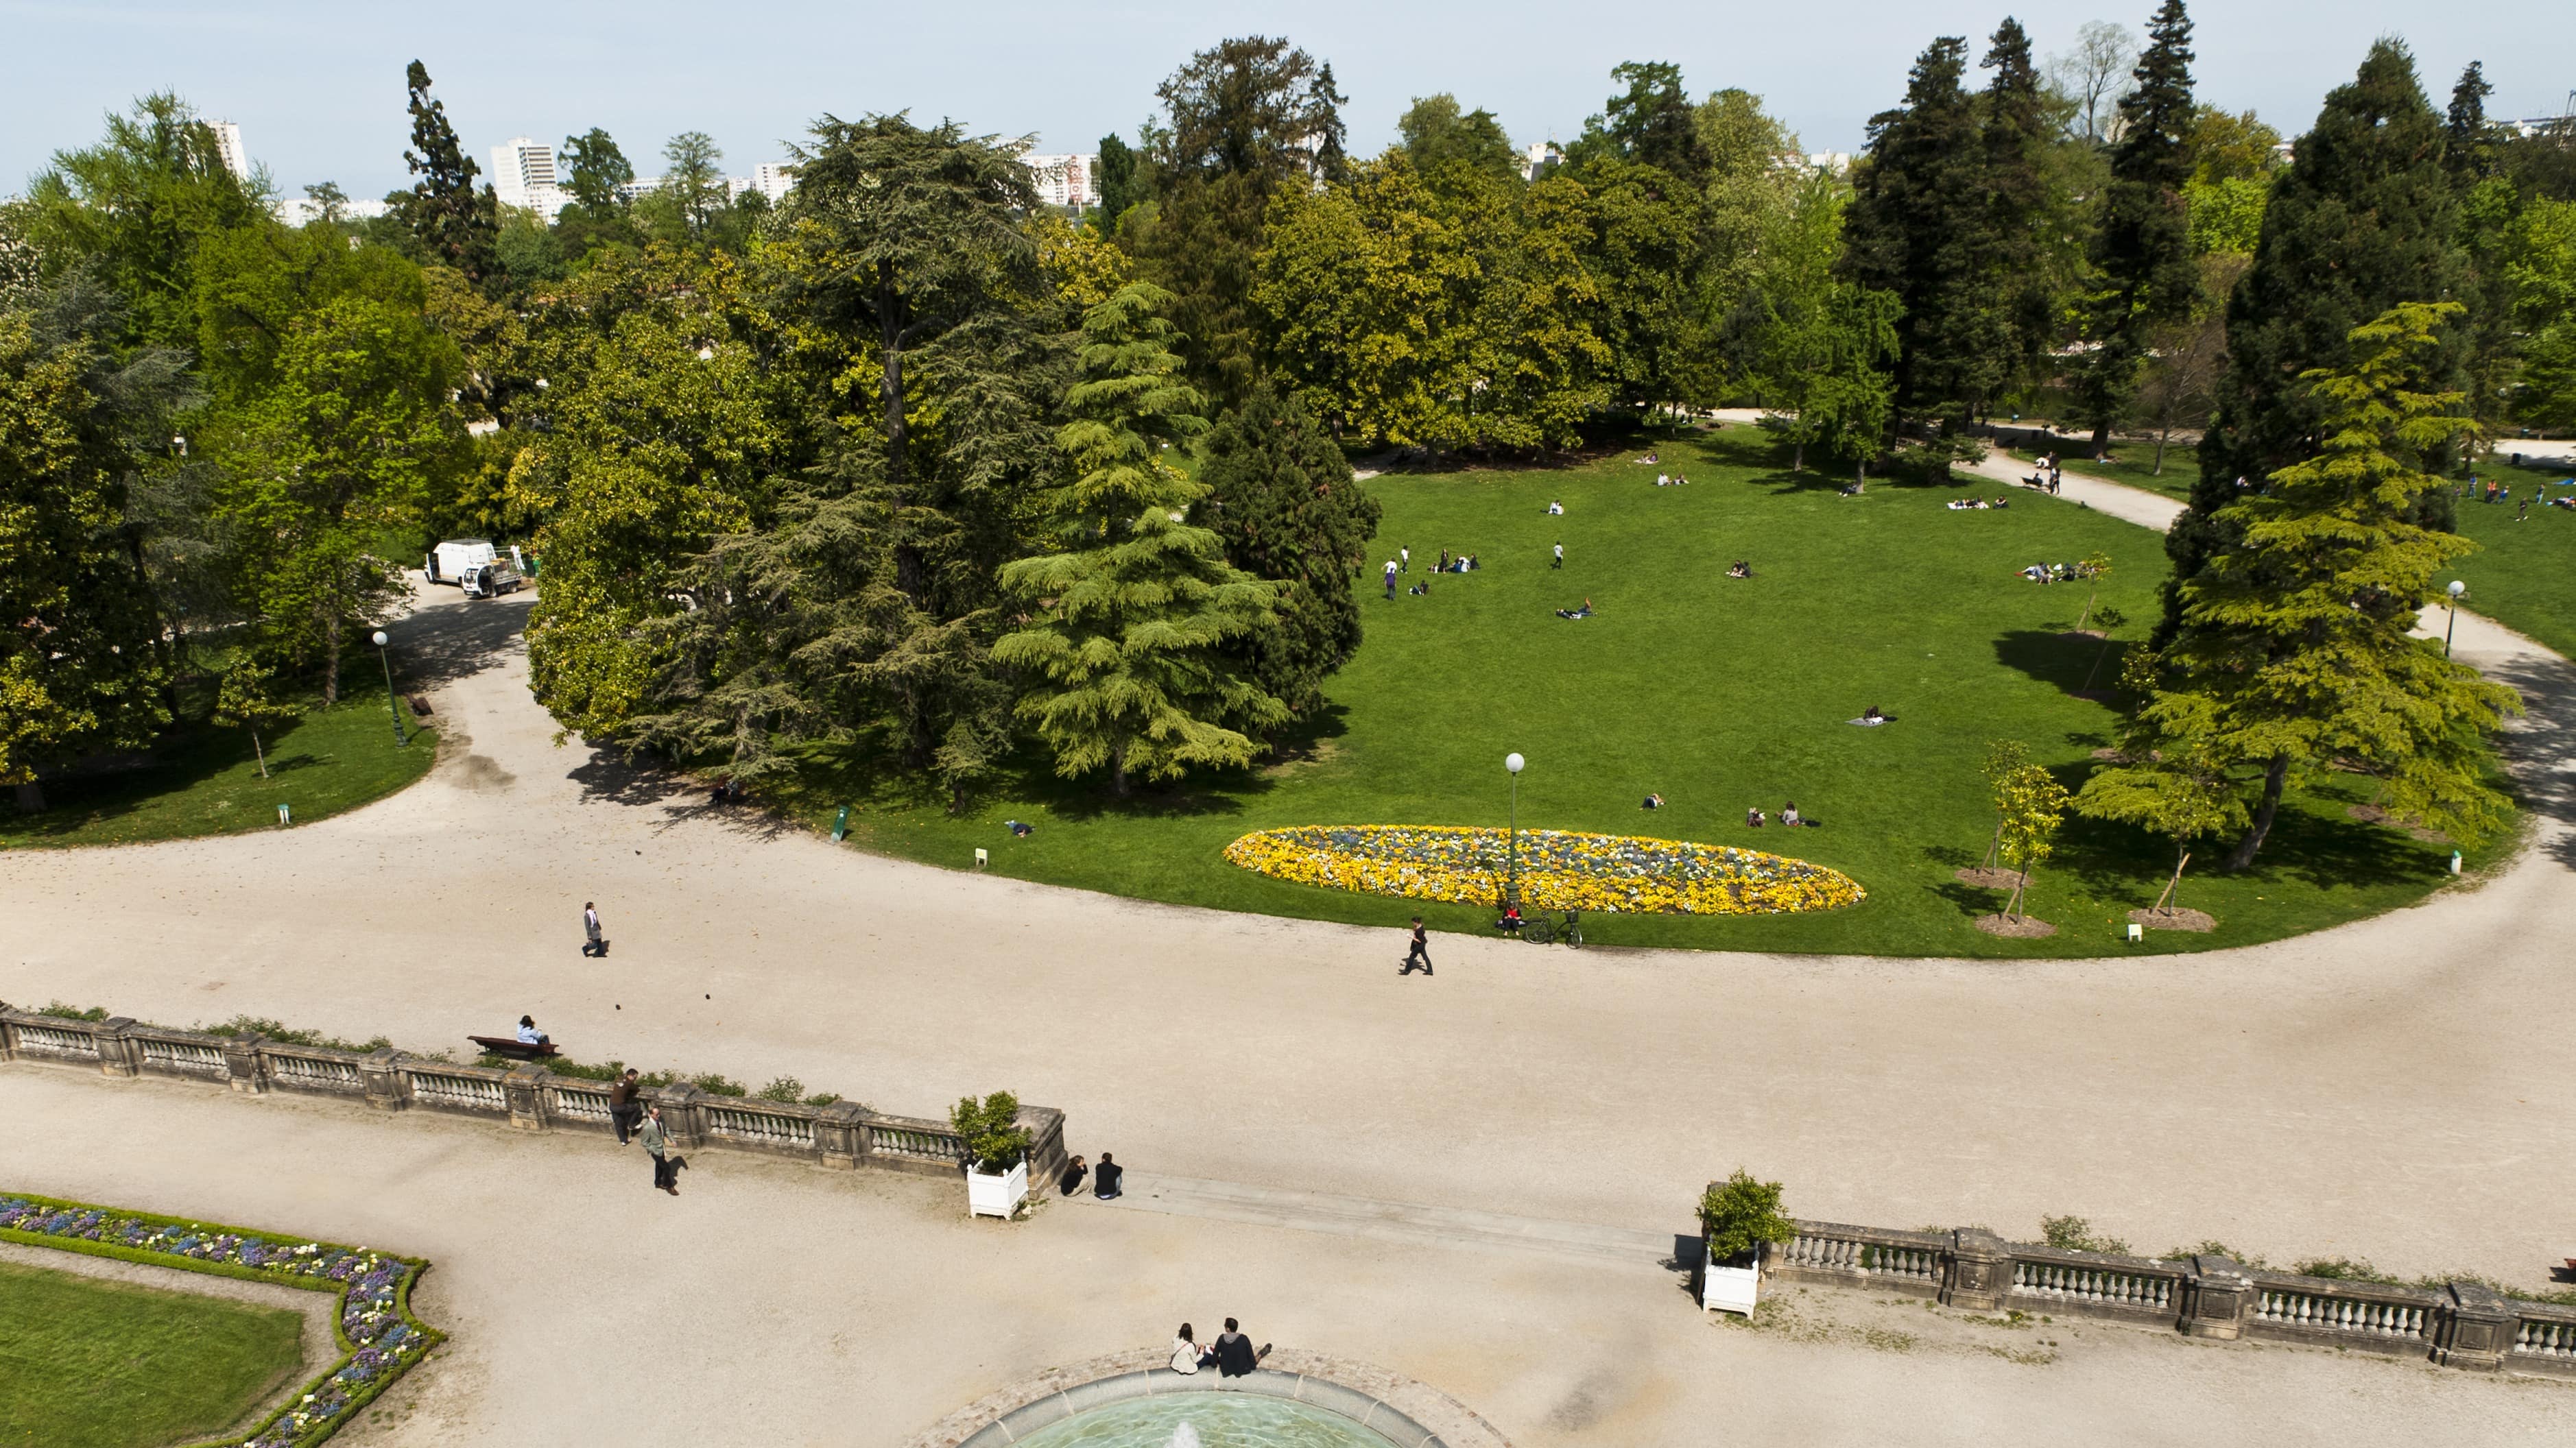 Vue aérienne du jardin public de Bordeaux : fontaine, parterres de fleurs, conifères et promeneurs installés dans l’herbe